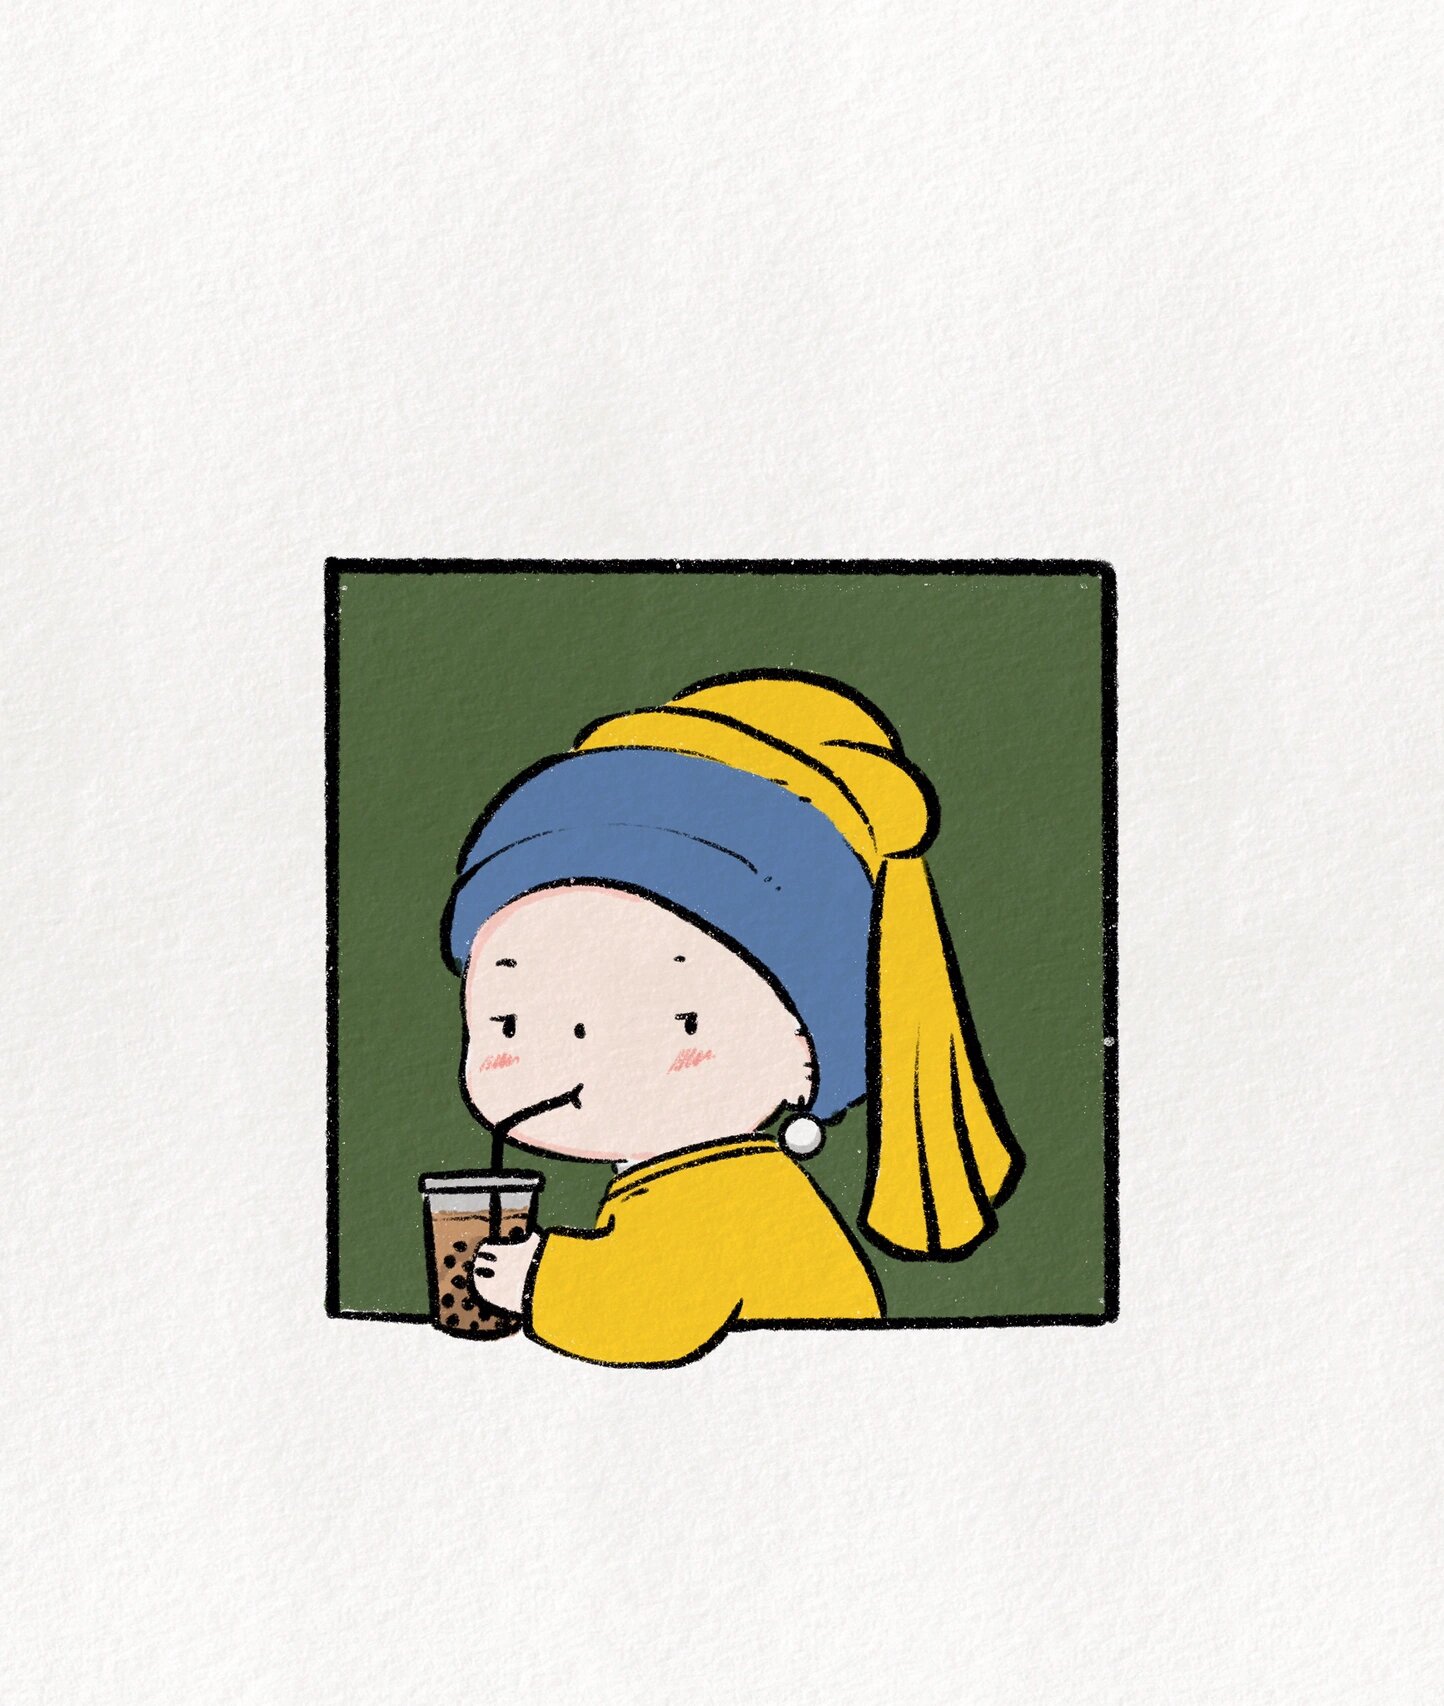 超可爱简笔画教程:带珍珠的少女喝珍珠奶茶